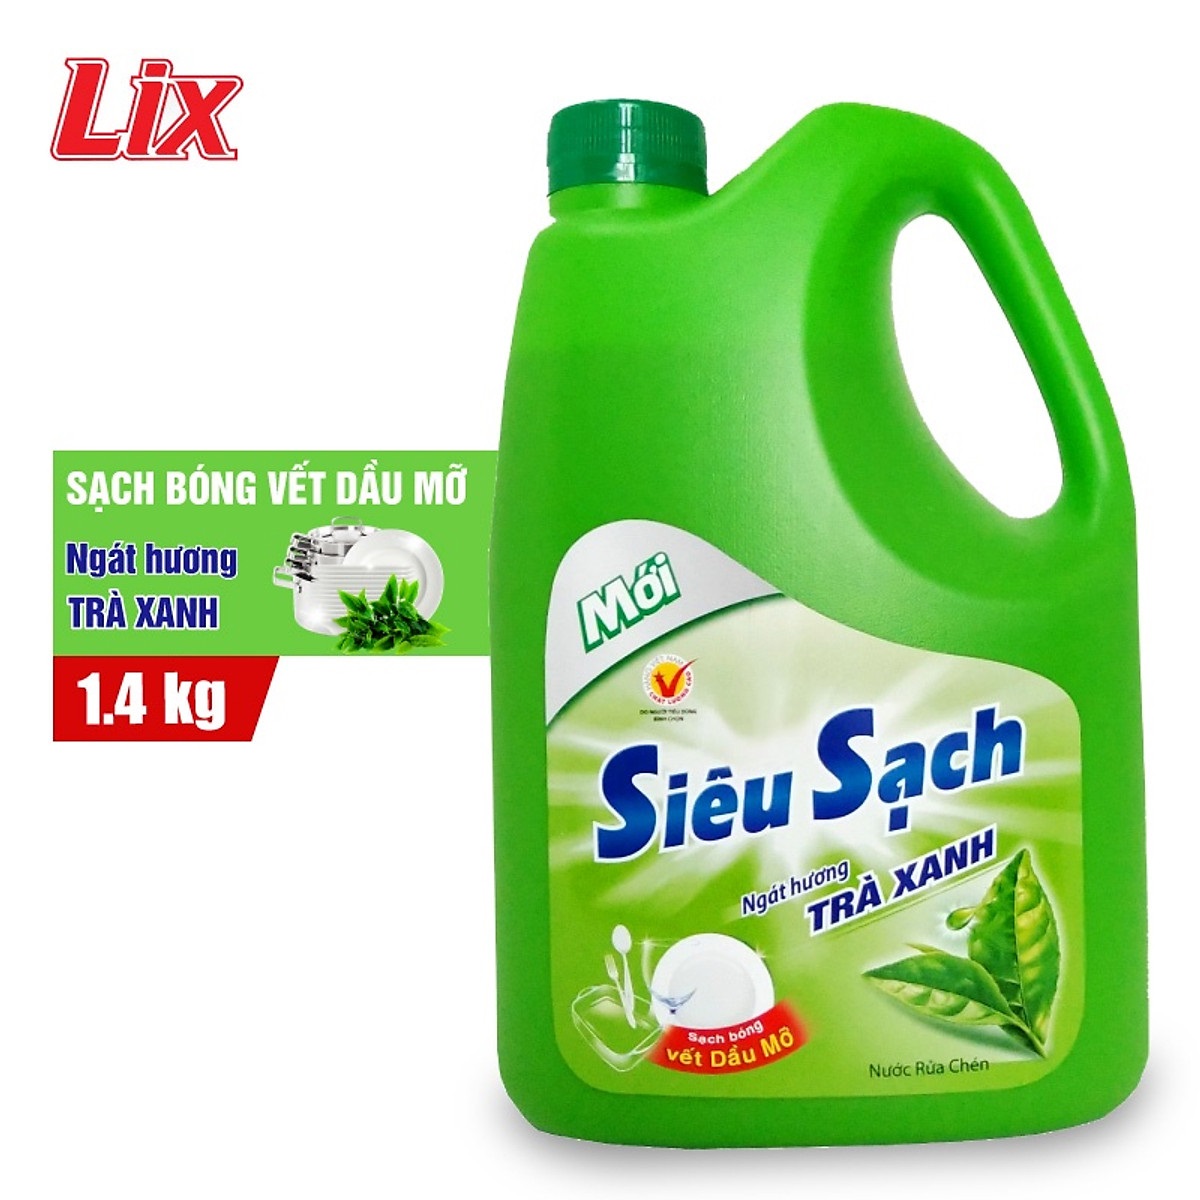 Nước rửa chén Lix siêu sạch hương trà xanh 1.4Kg N8106 thơm dịu sạch bóng vết dầu mỡ